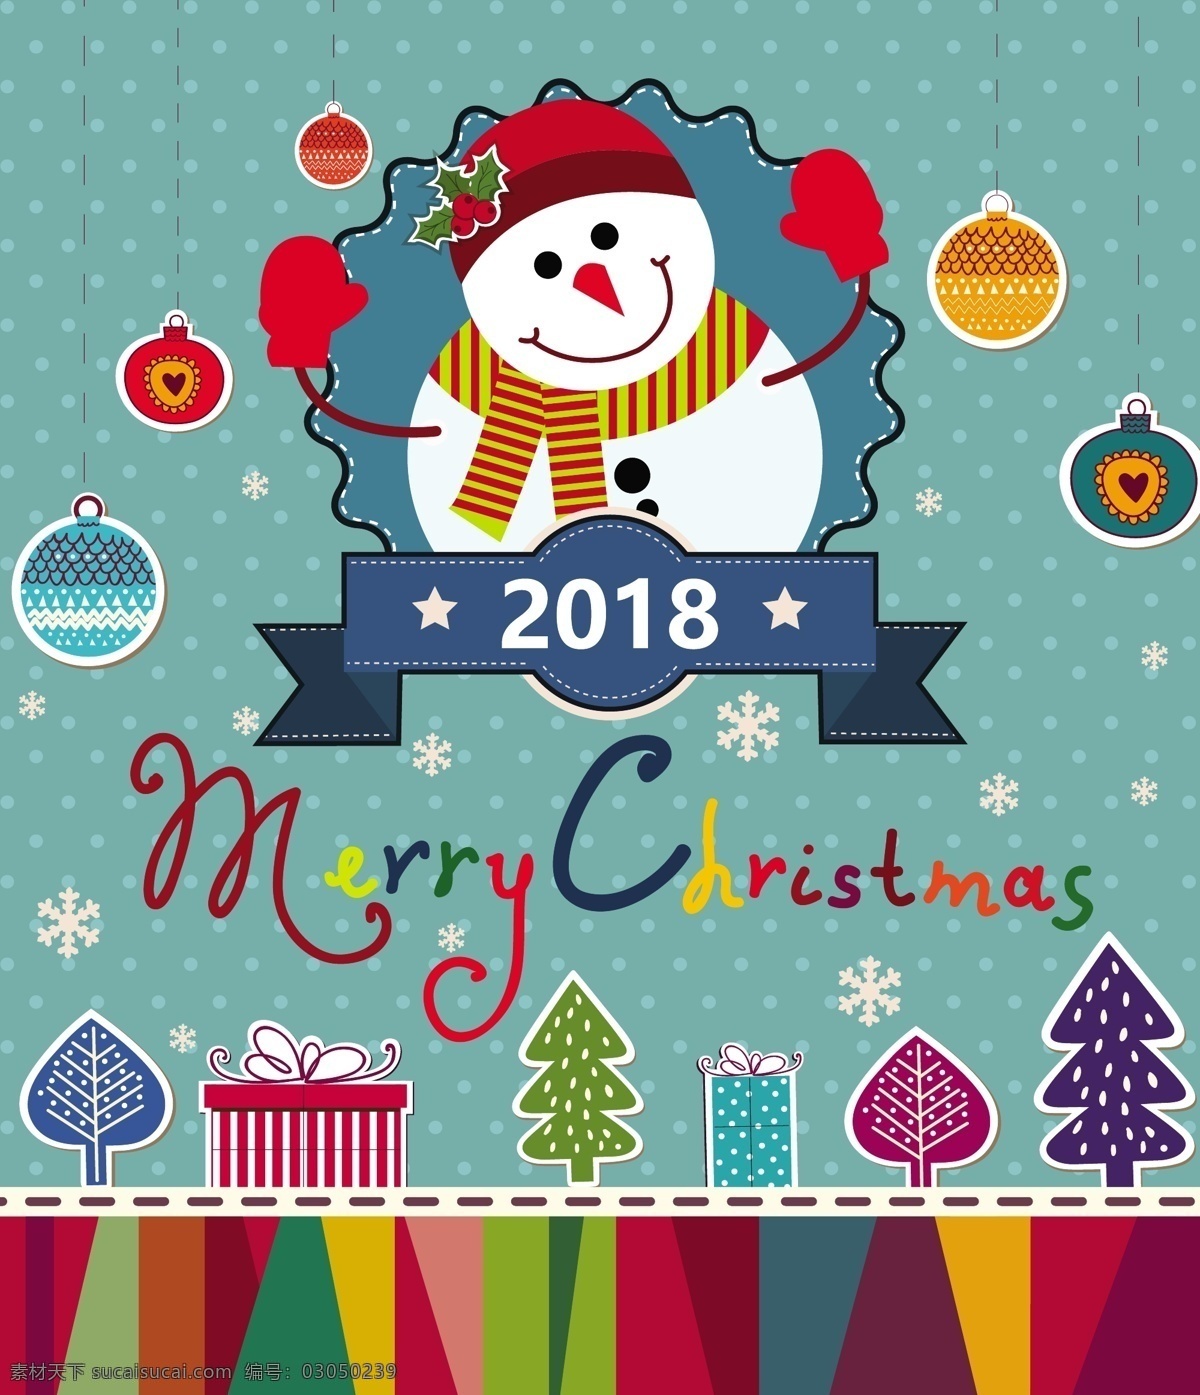 圣诞 横幅 雪人 x mas象征 圣诞素材 2018插图 圣诞横幅 矢量图